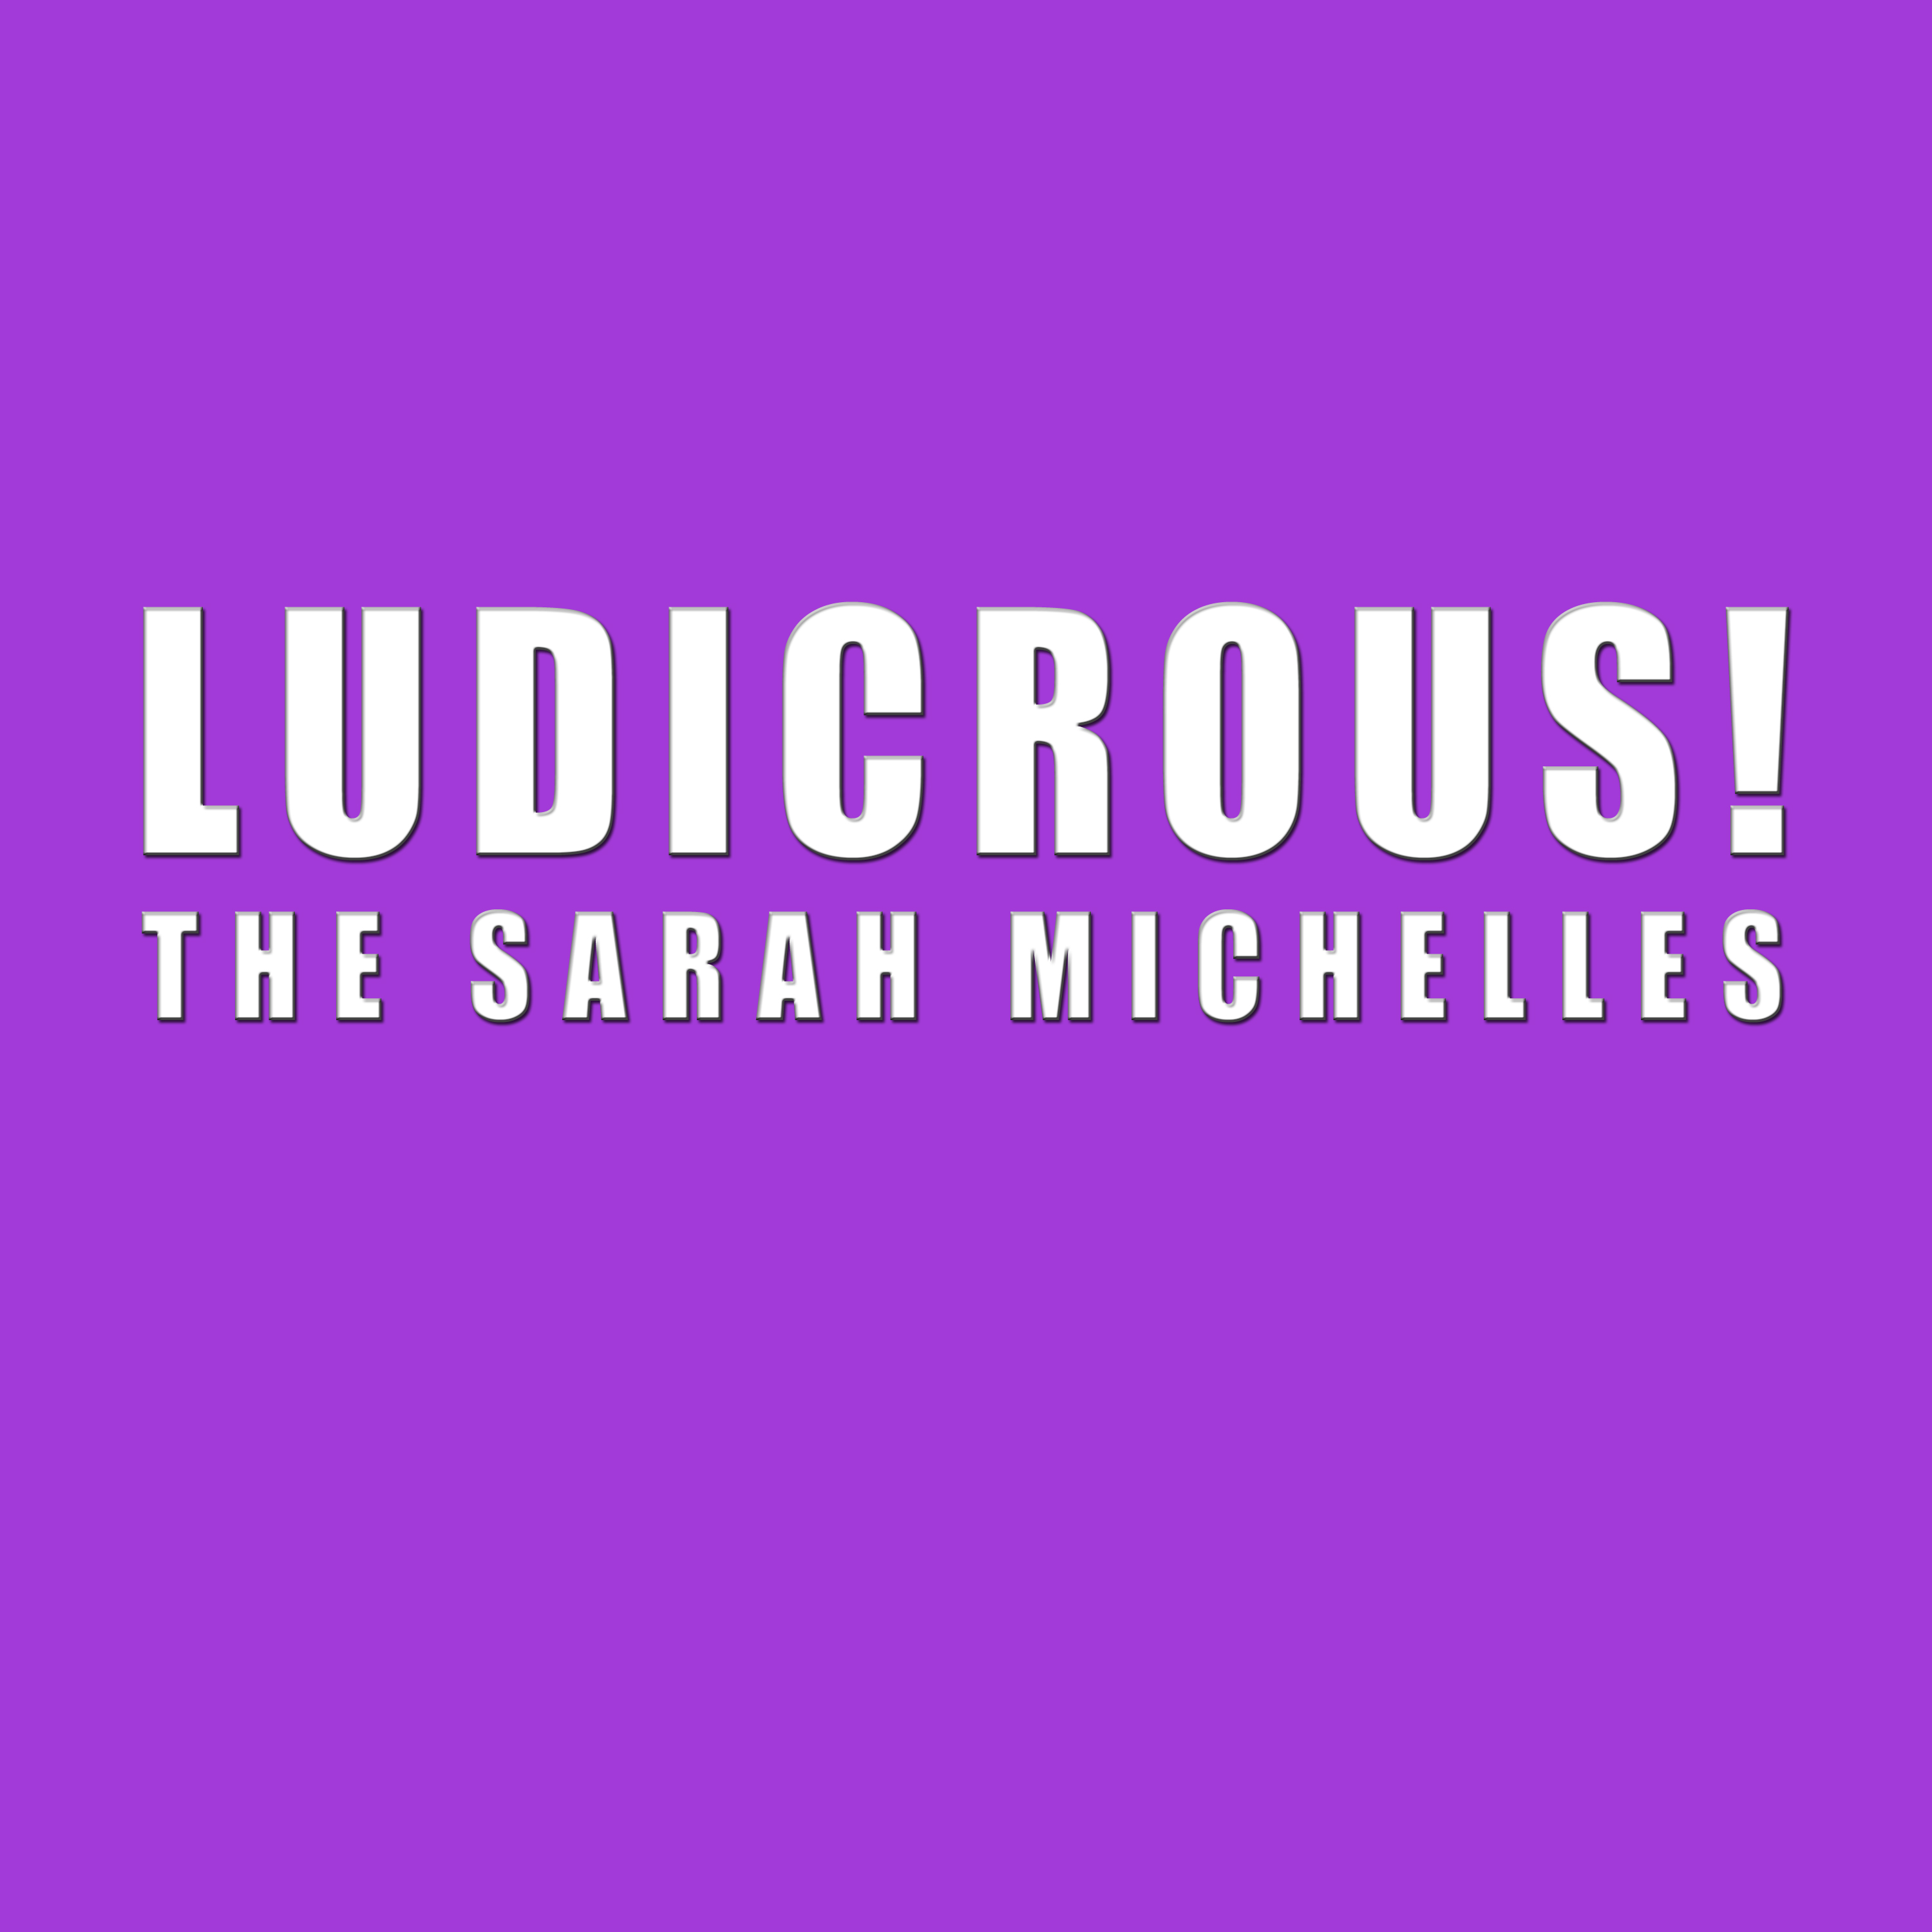 The Sarah Michelles - Ludiicrous!